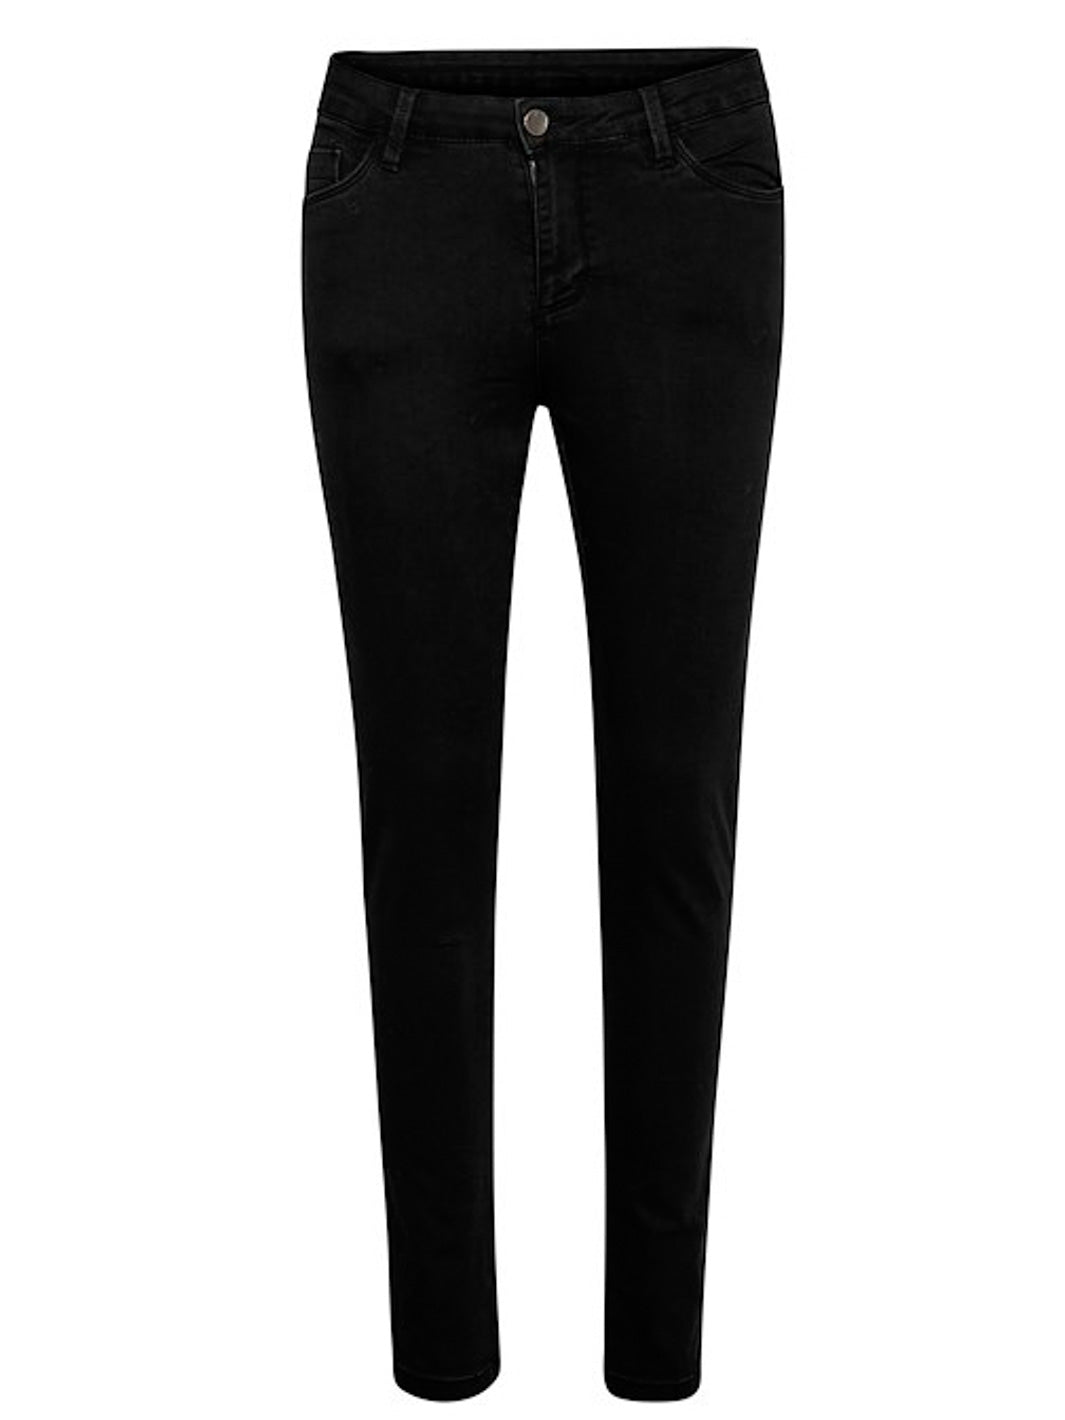 Kaffe KAvicky jeans black deep - Online-Mode